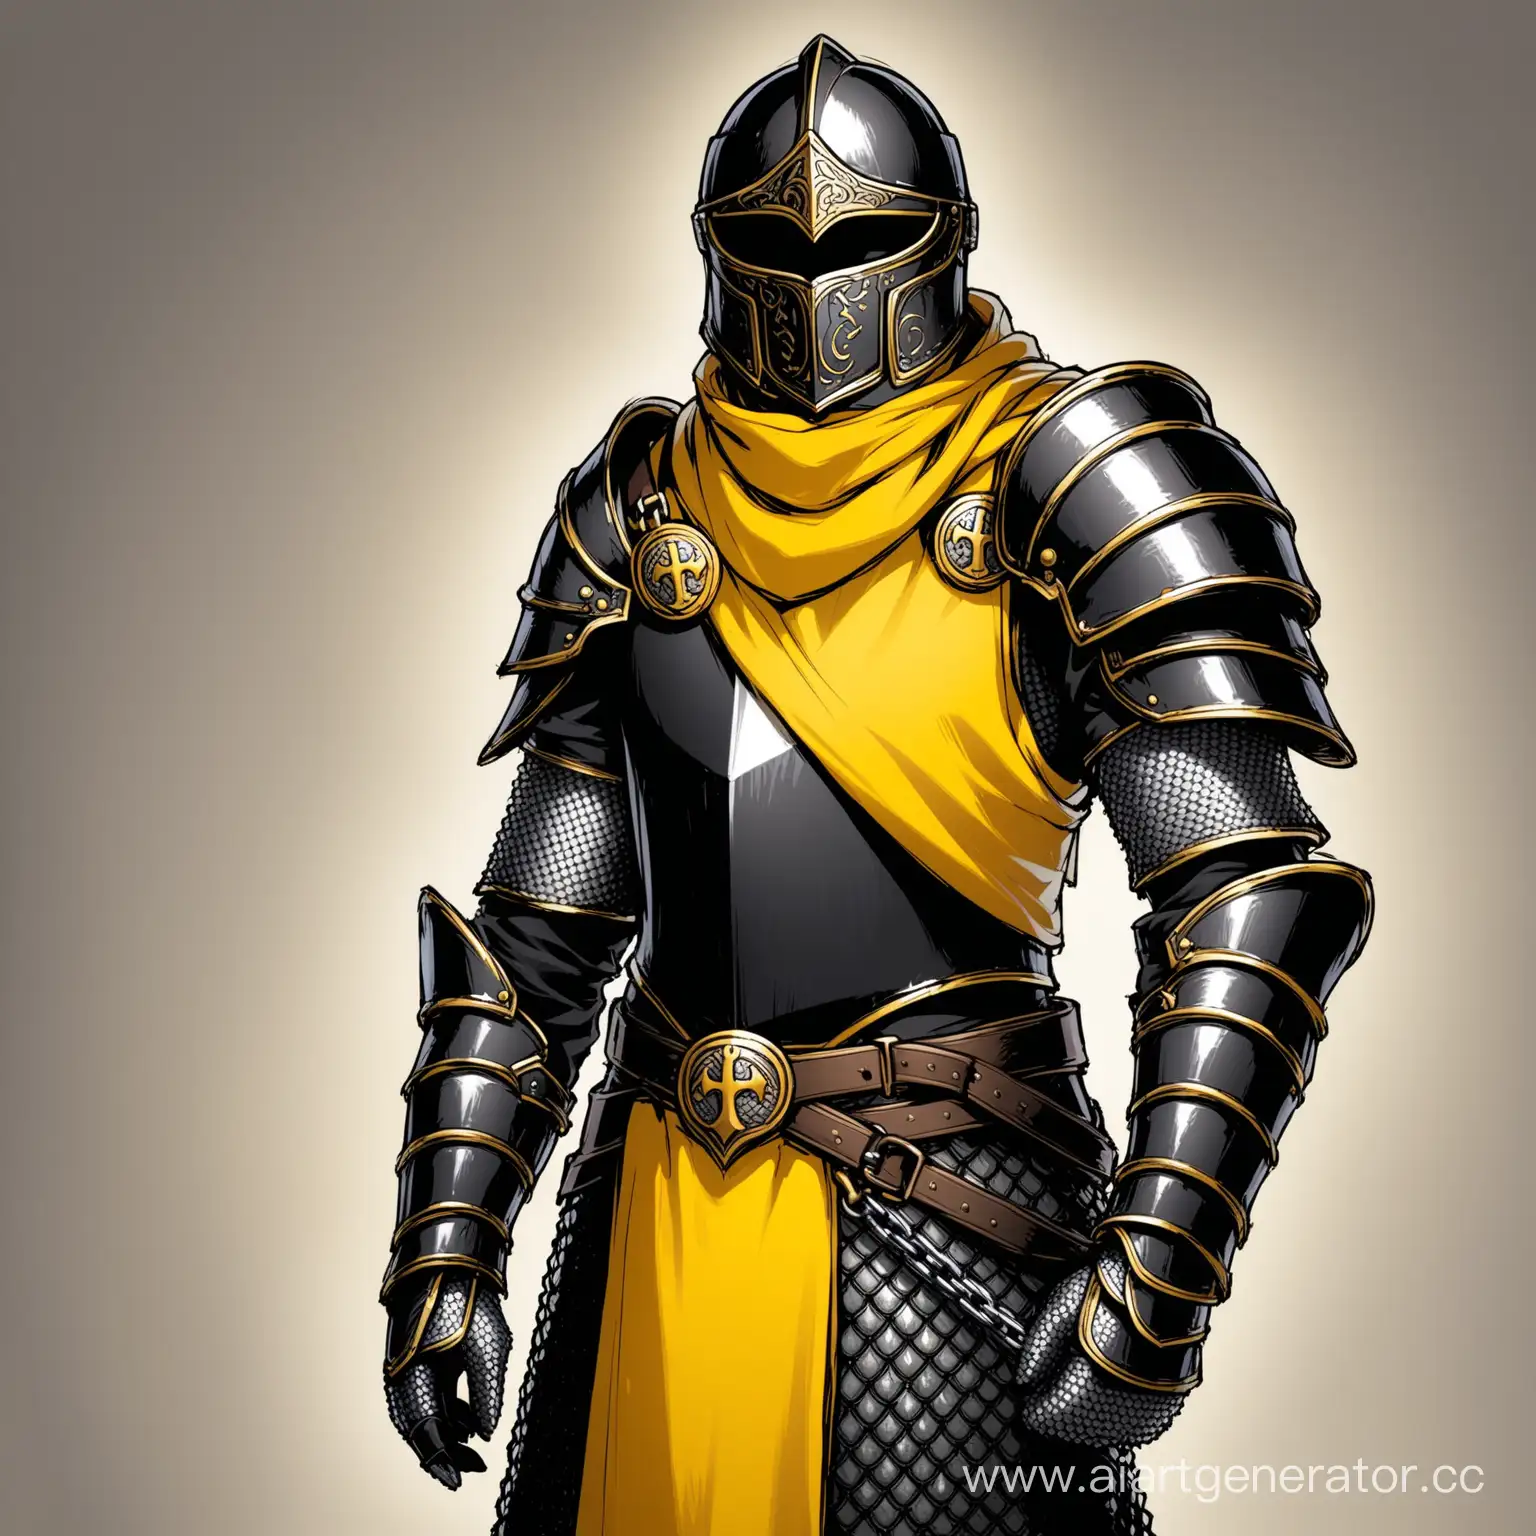 Воин в чёрных доспехах и кольчуге с жёлтым табардом и символом в виде чёрной латной перчатки на плече